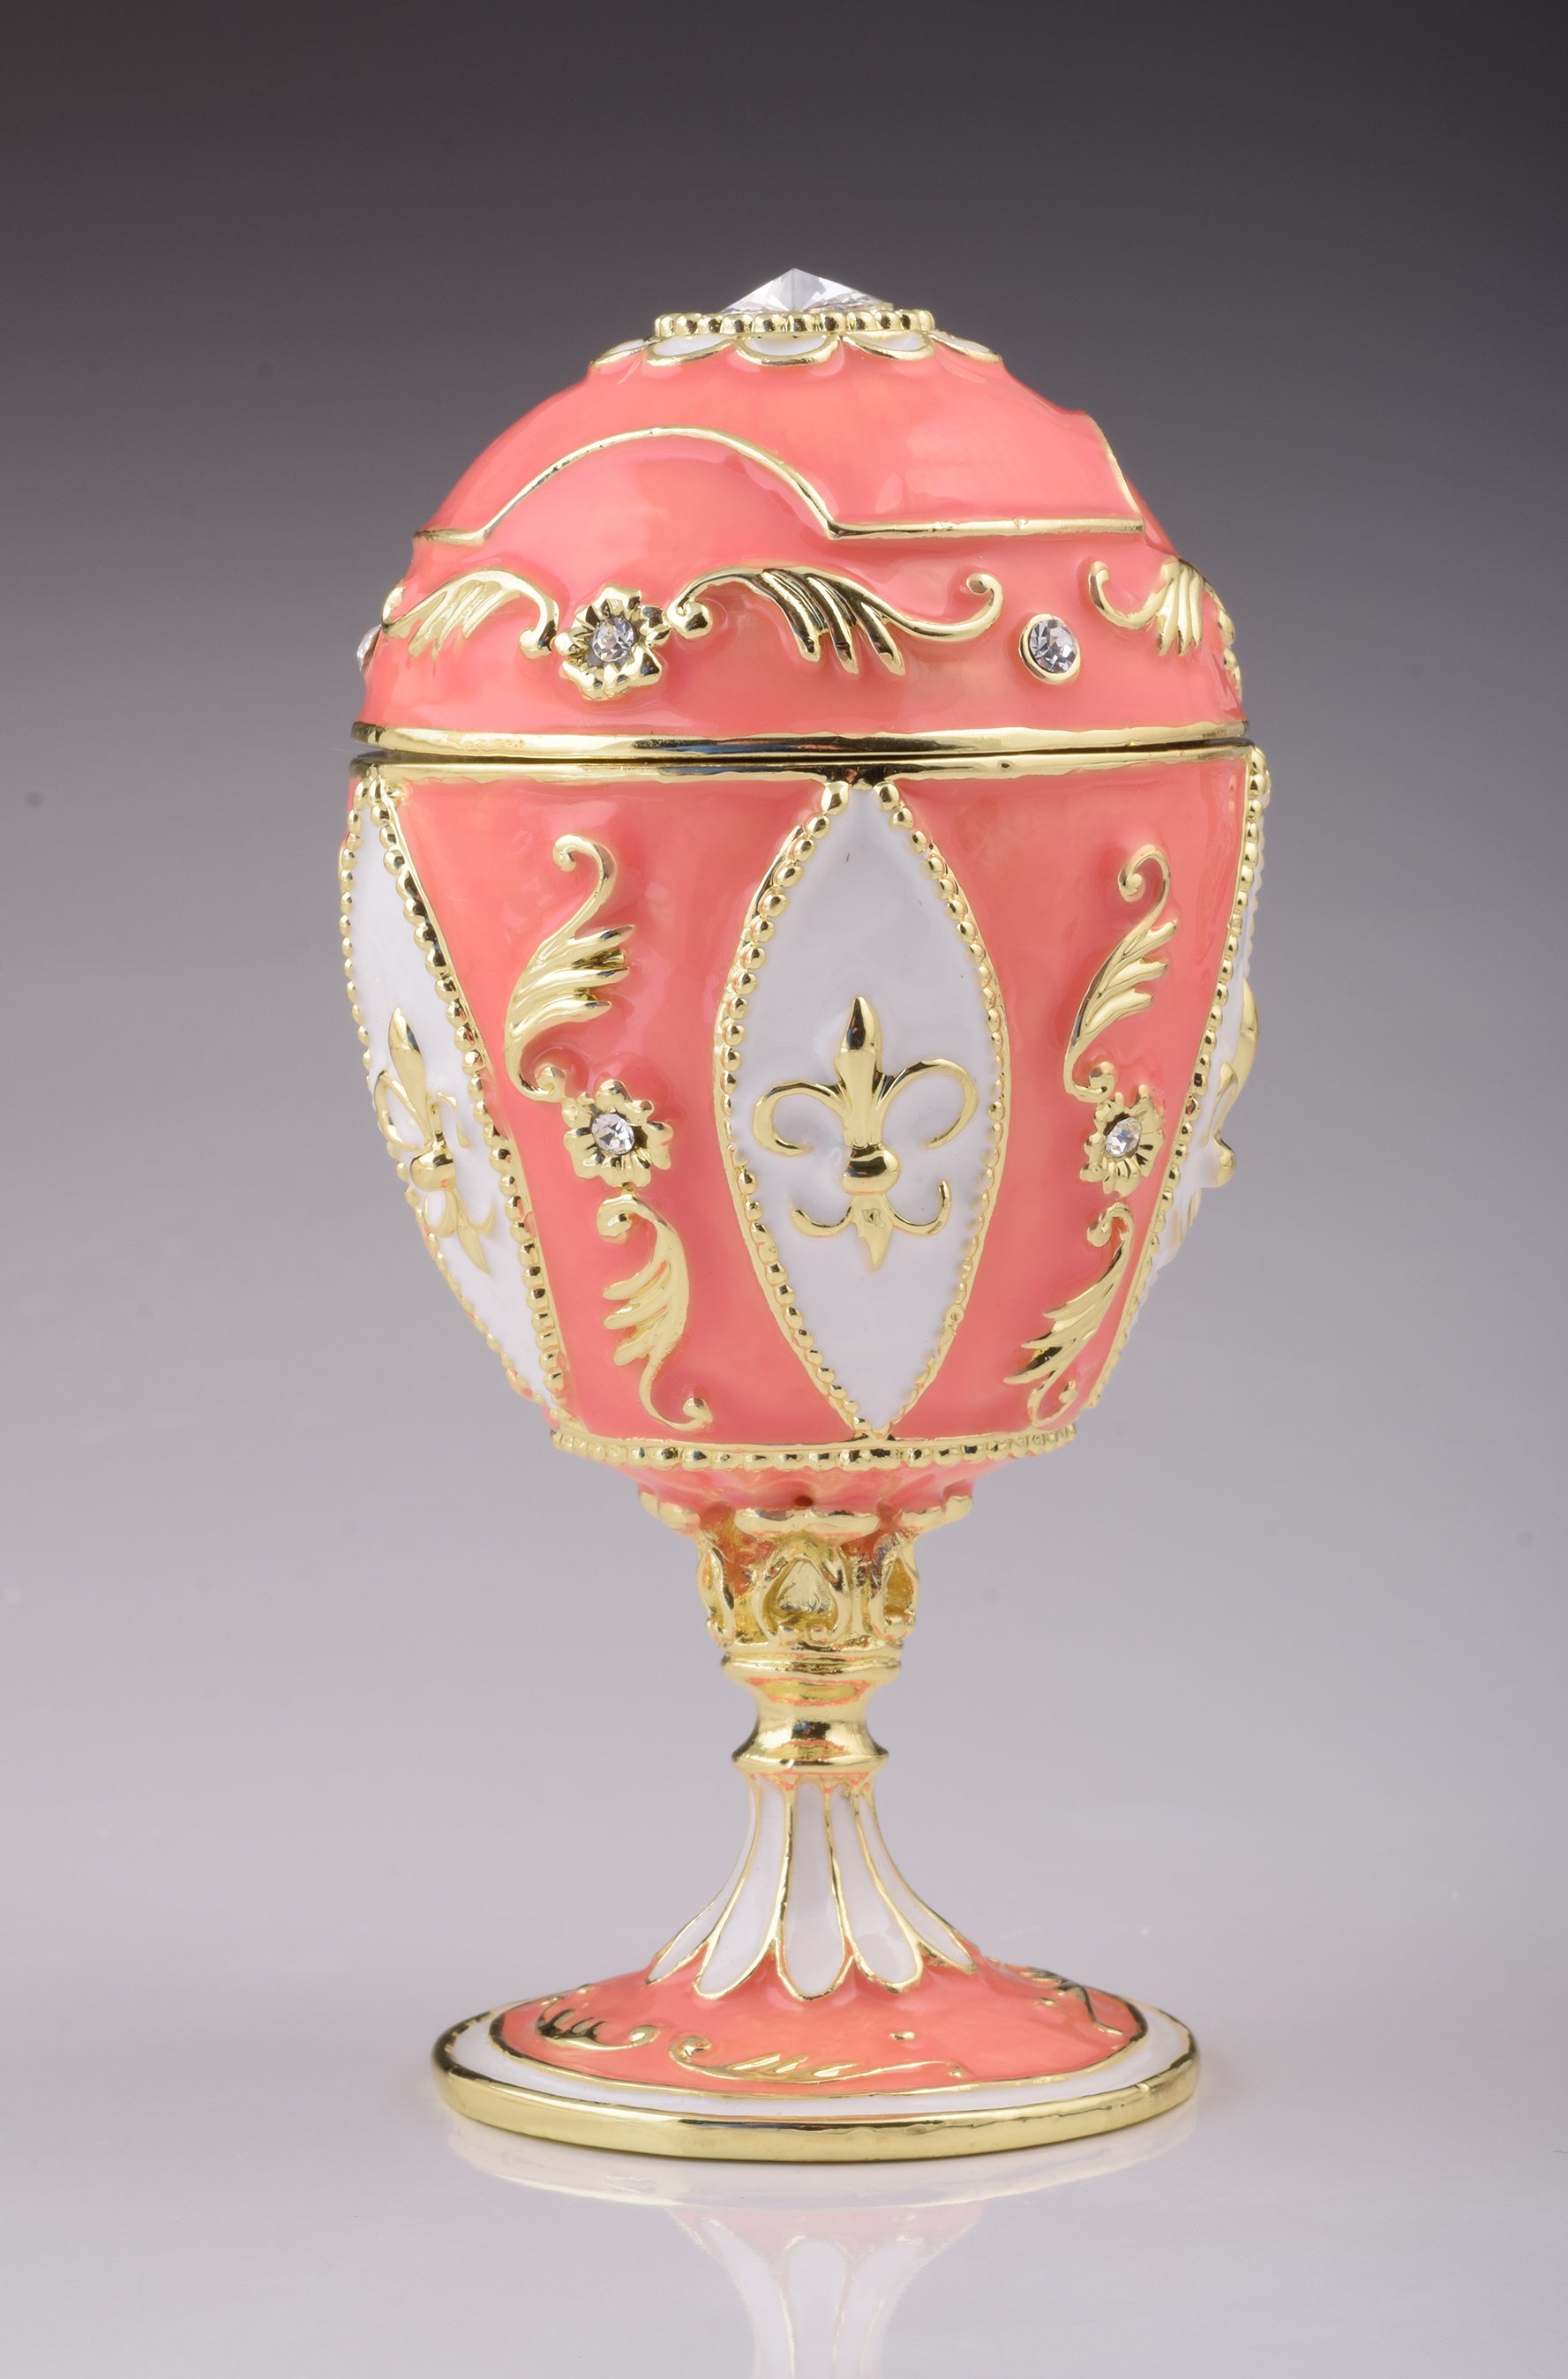 Oeuf de Fabergé rose avec éléphant à l'intérieur